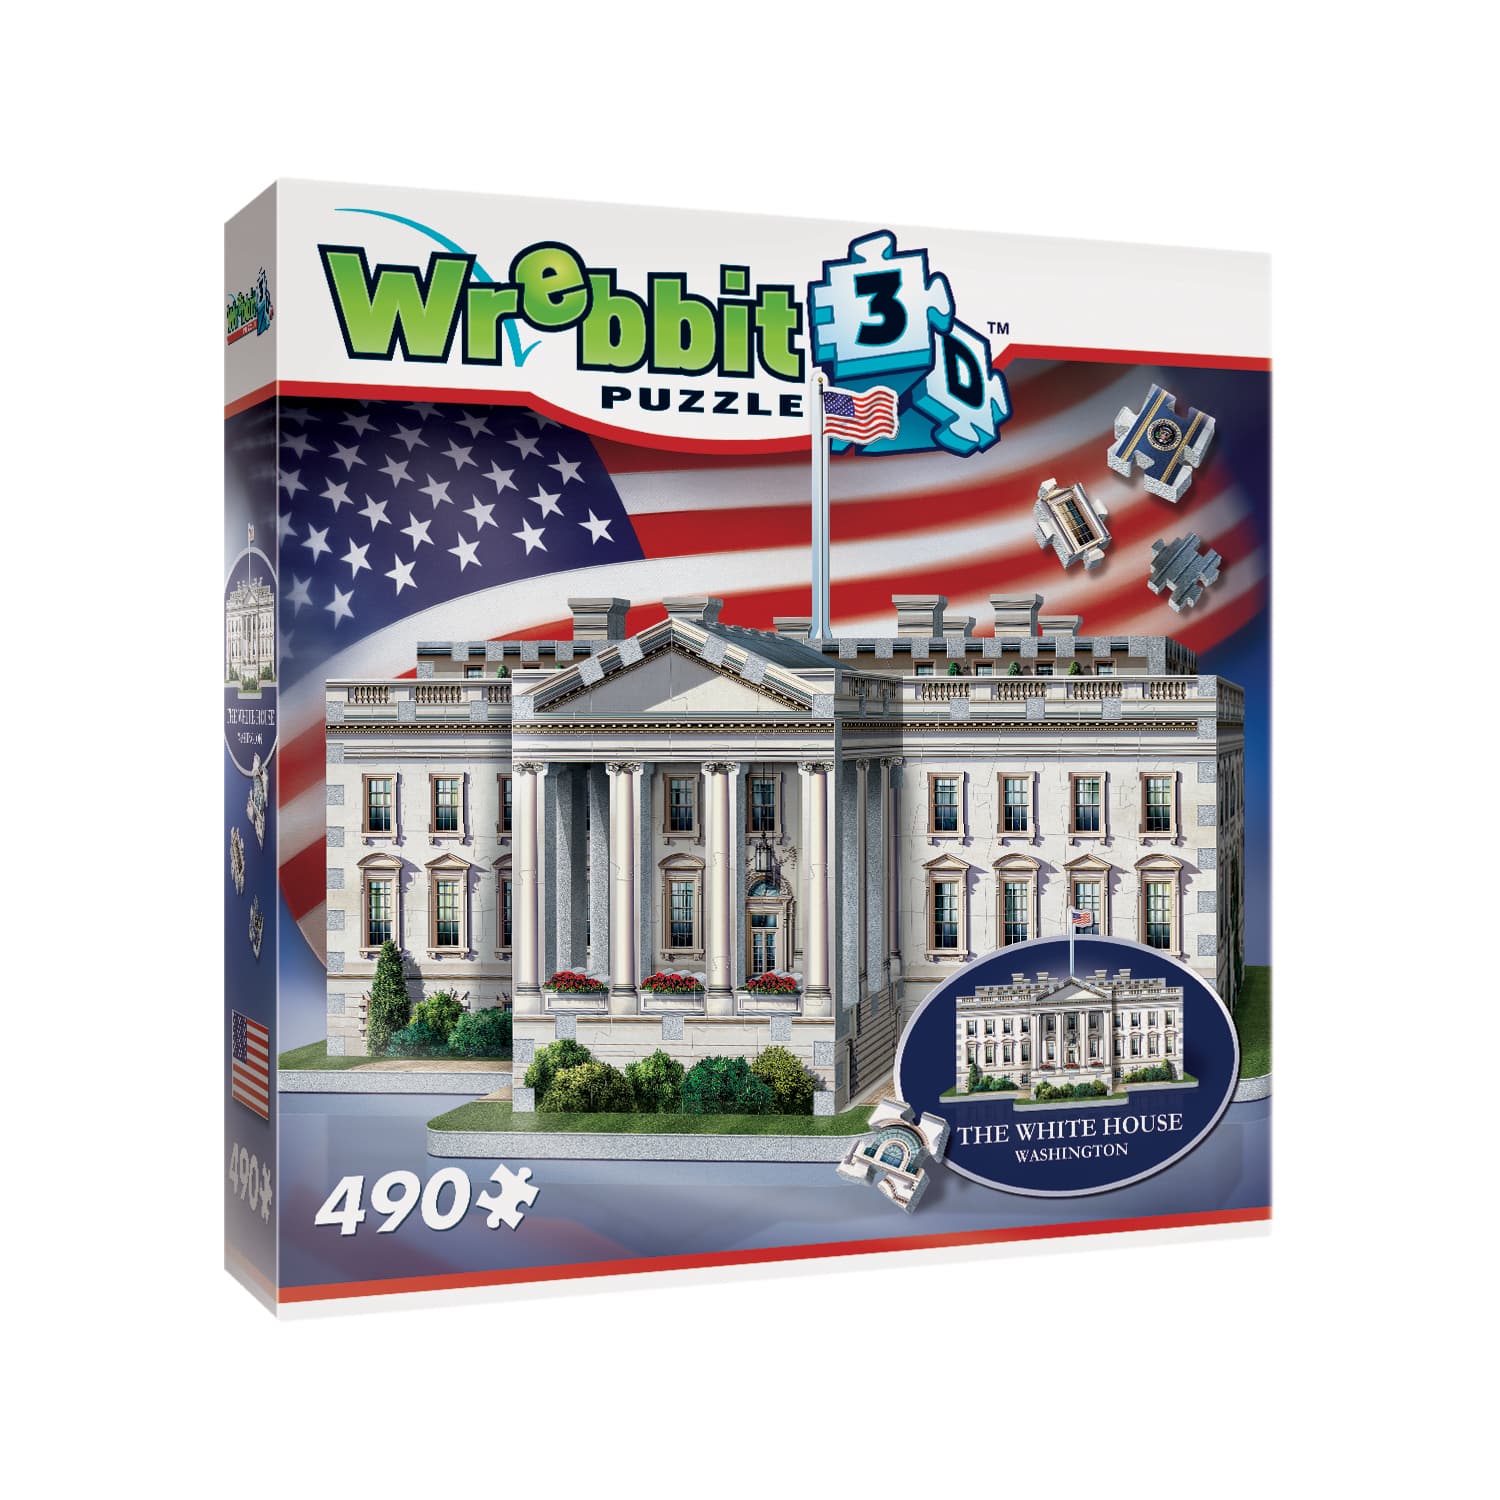 Wrebbit 3D Puzzle&#x2122; The White House 490 Piece Puzzle